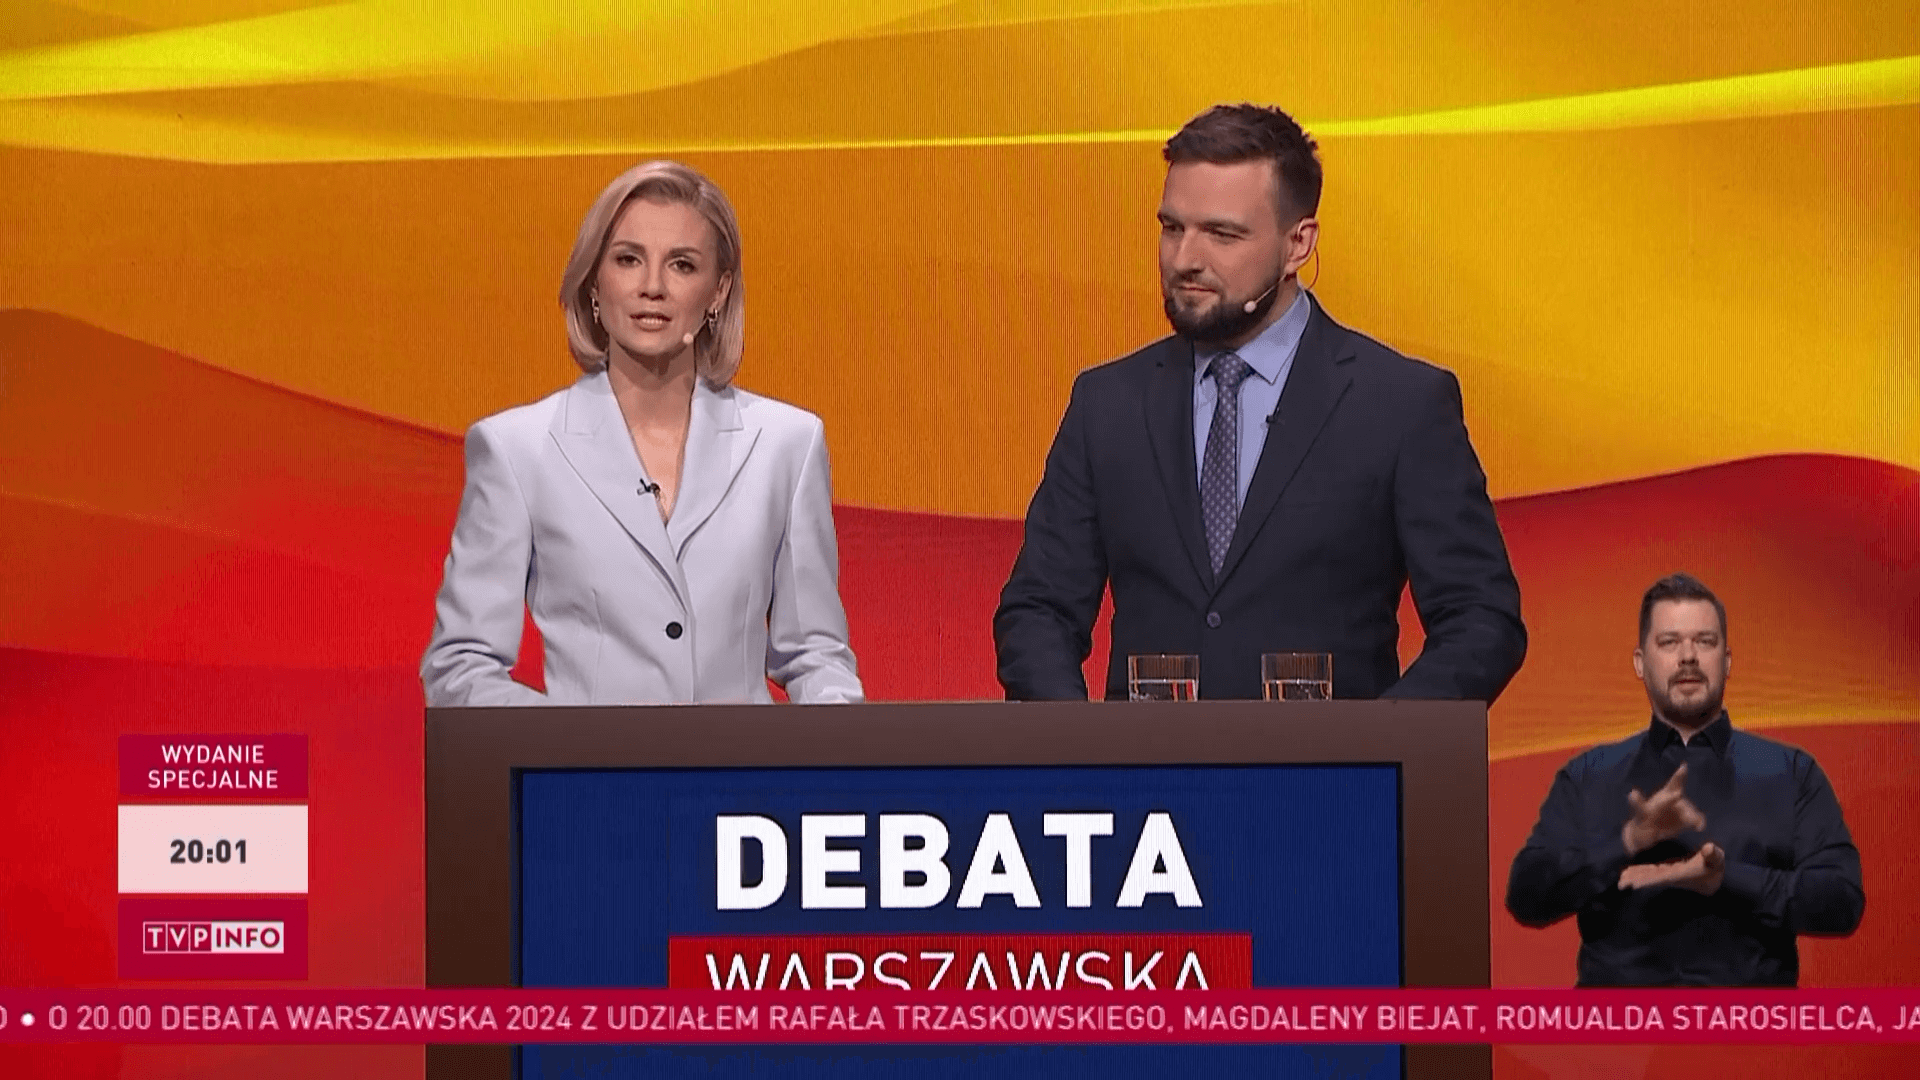 Ekspert ocenił debatę przedwyborczą, fot. kadr z debaty przedwyborczej, prod. TVP Info 1.png